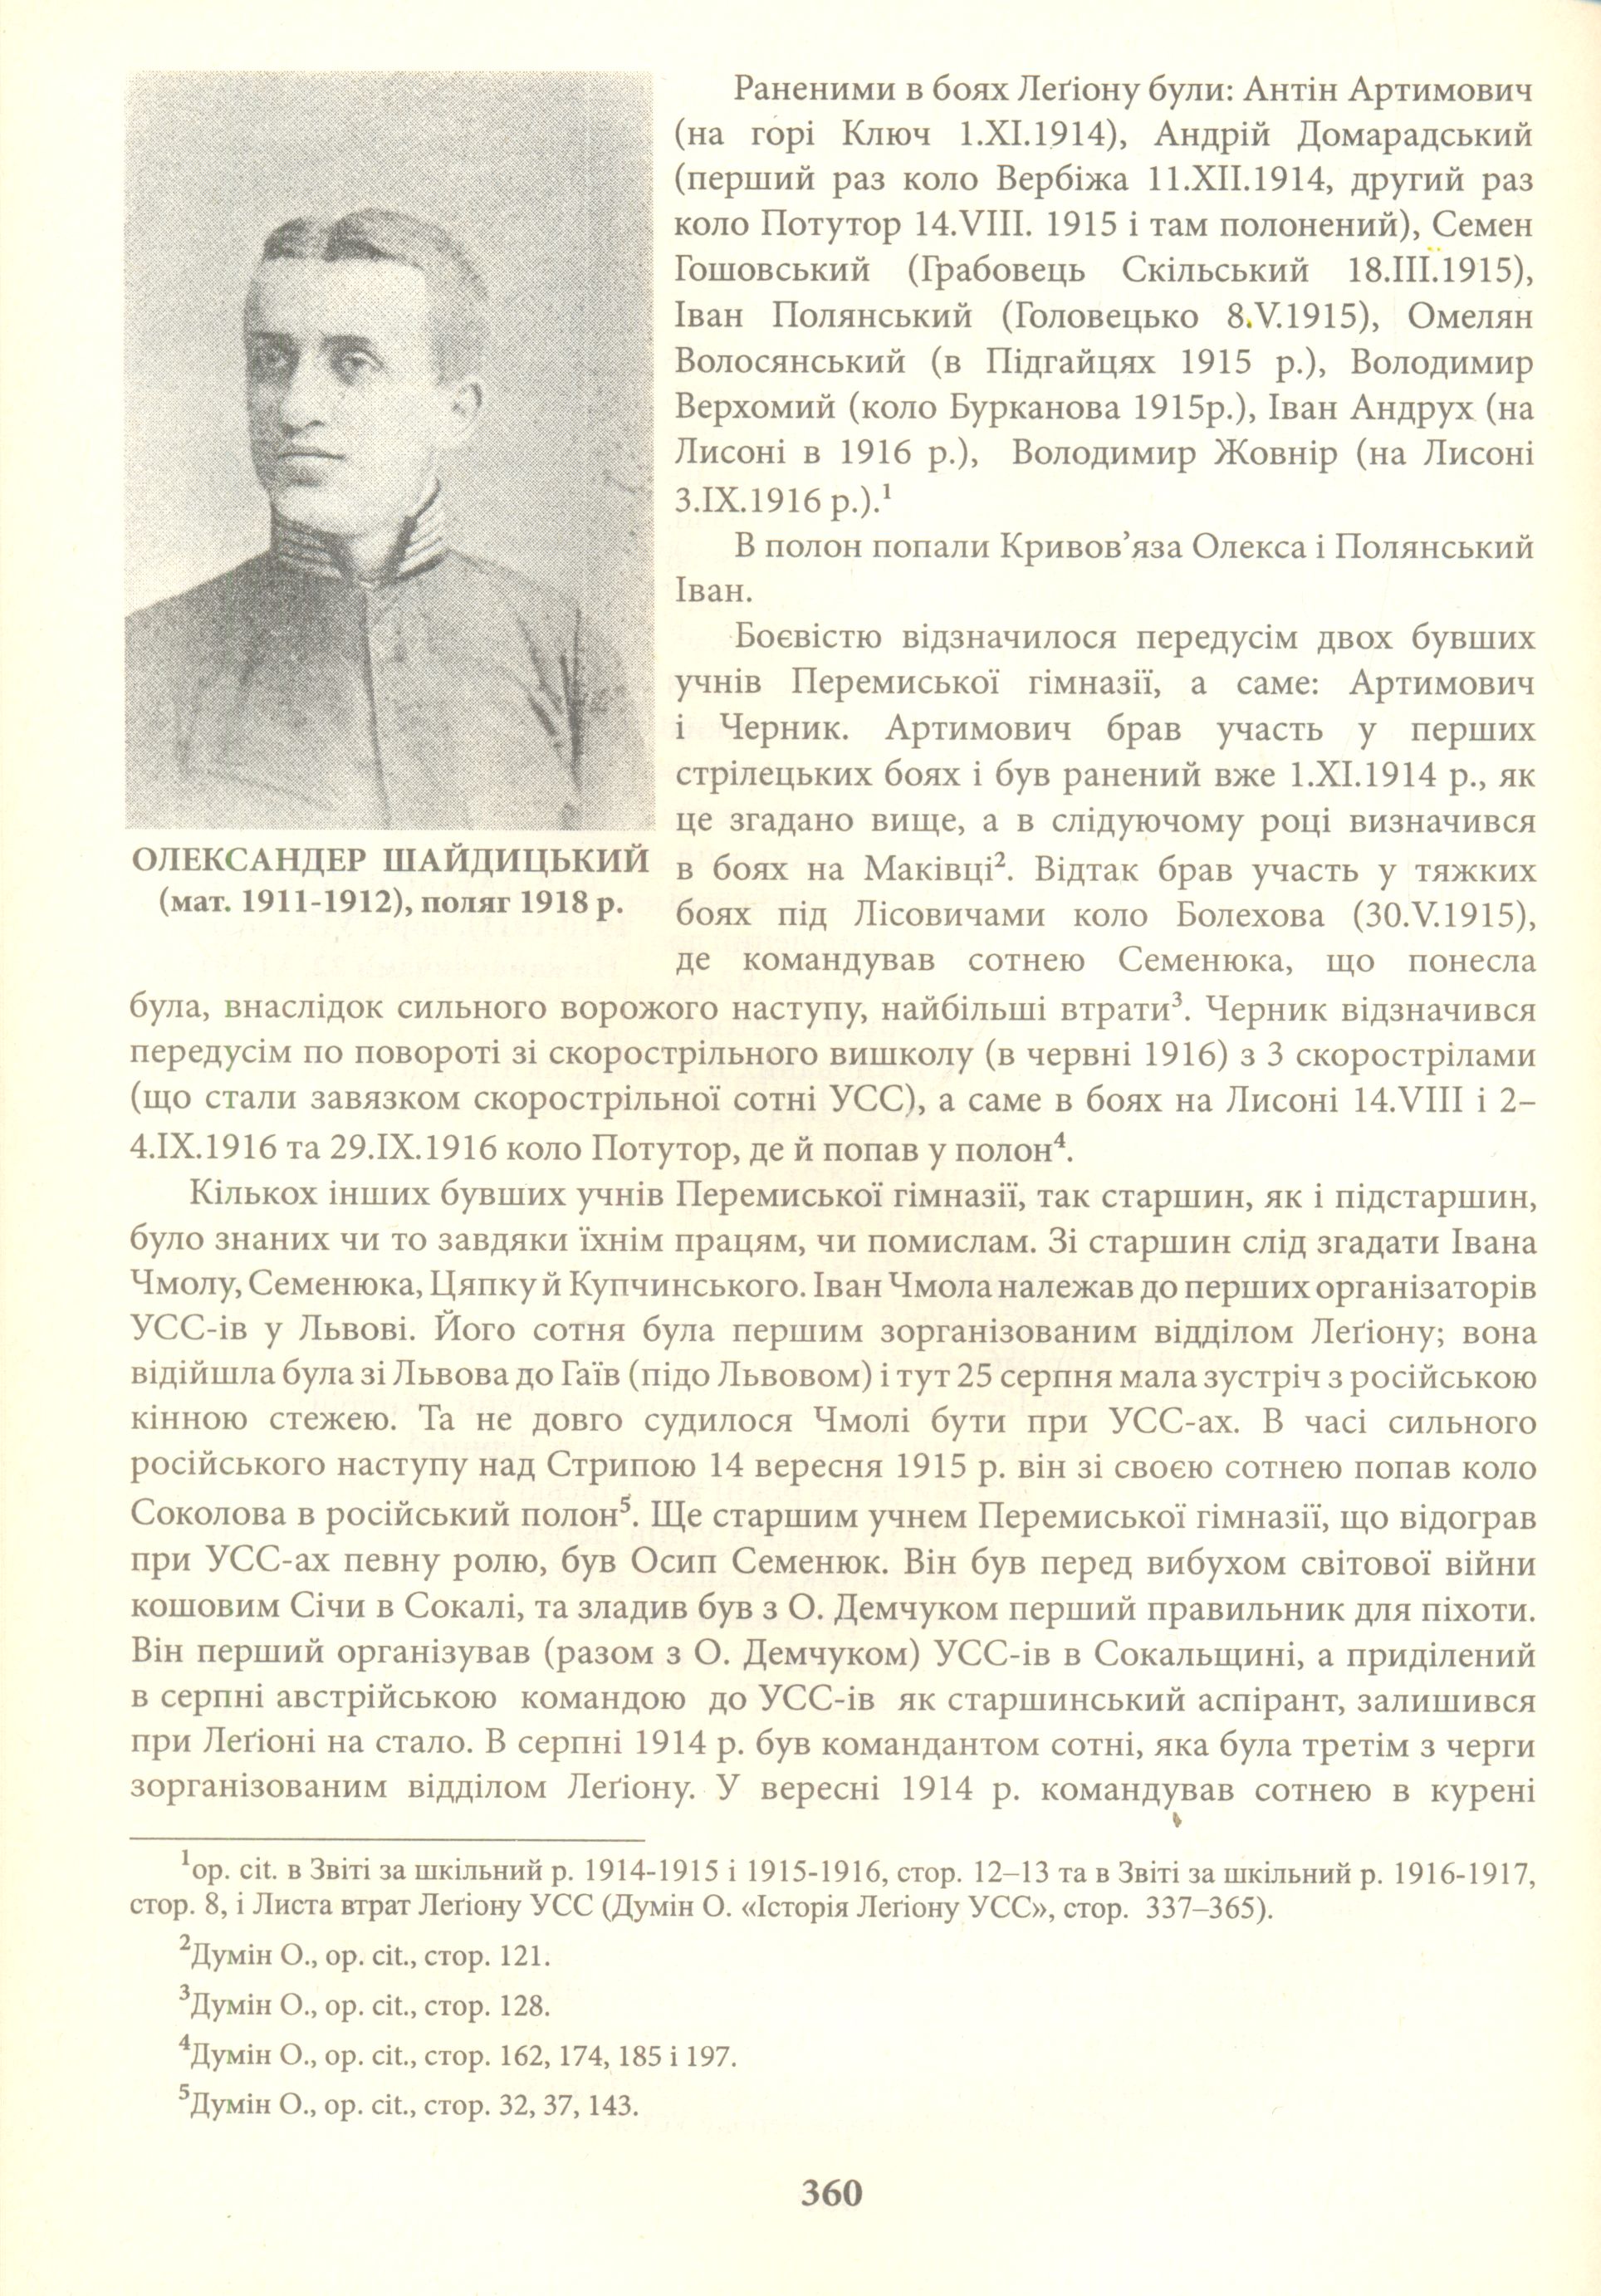 Галичина. Військова історія 1914-1921